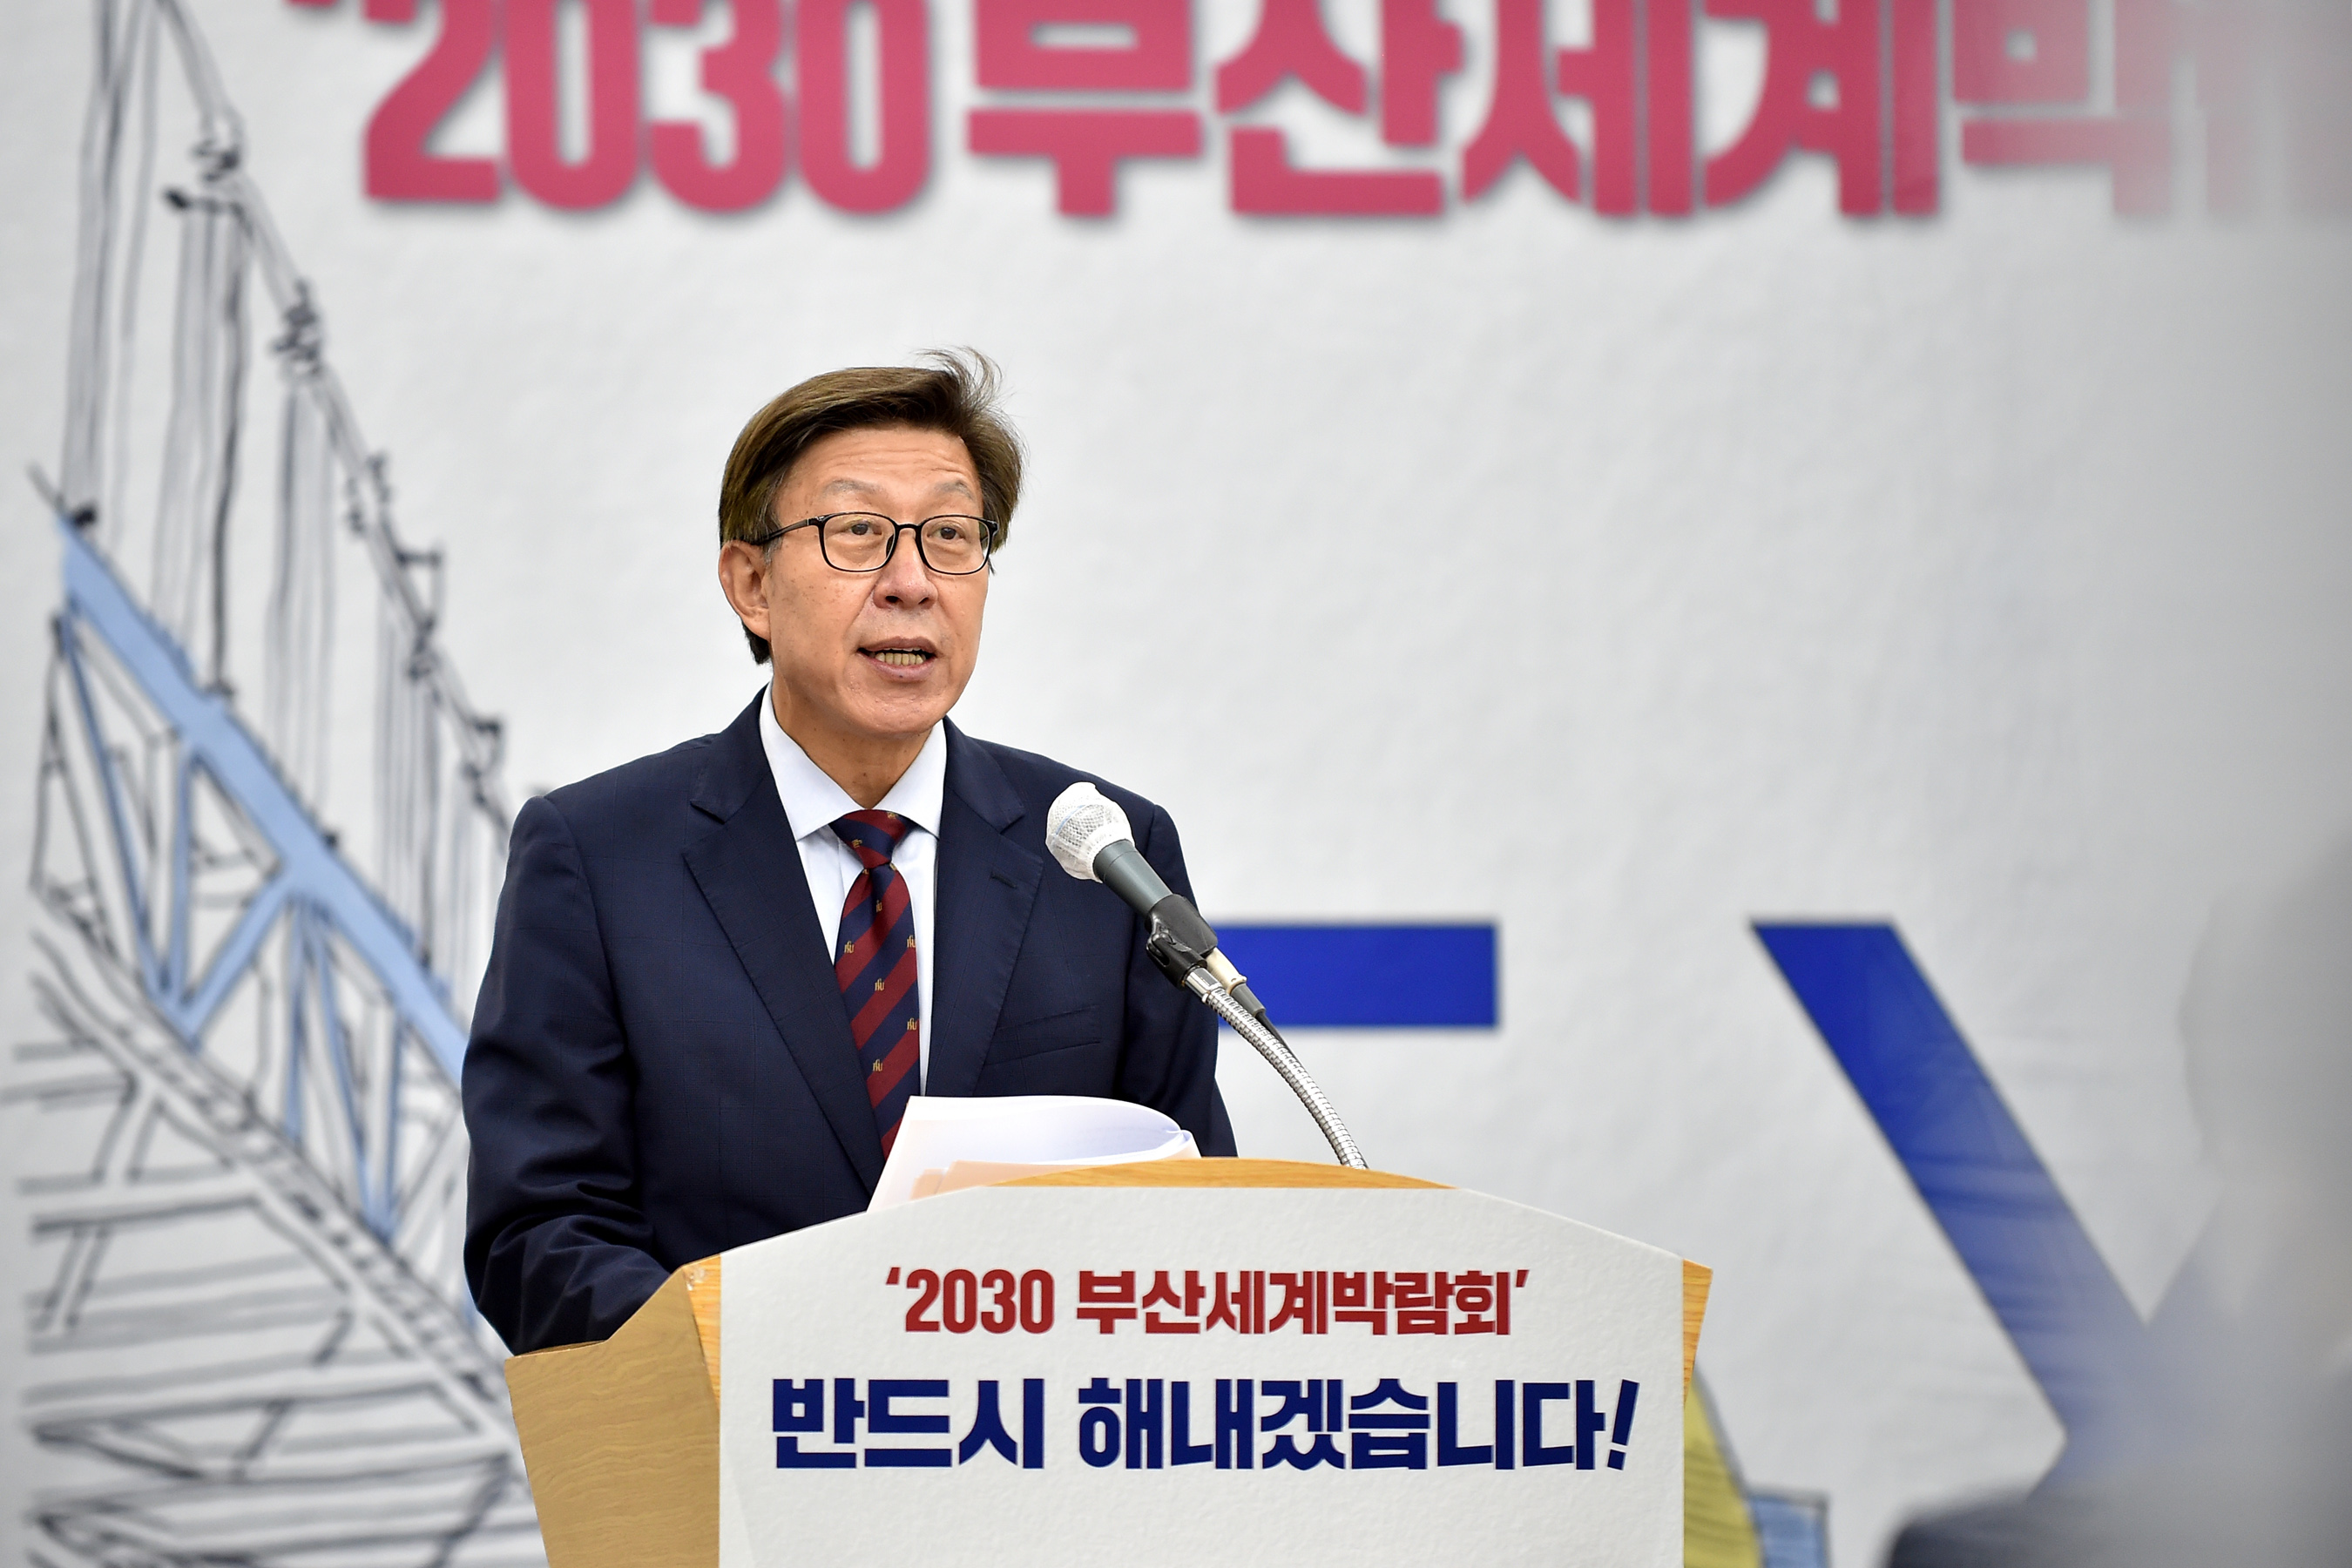 20210628 2030 부산월드엑스포 유치의지 대시민 브리핑(대회의실) 사진5